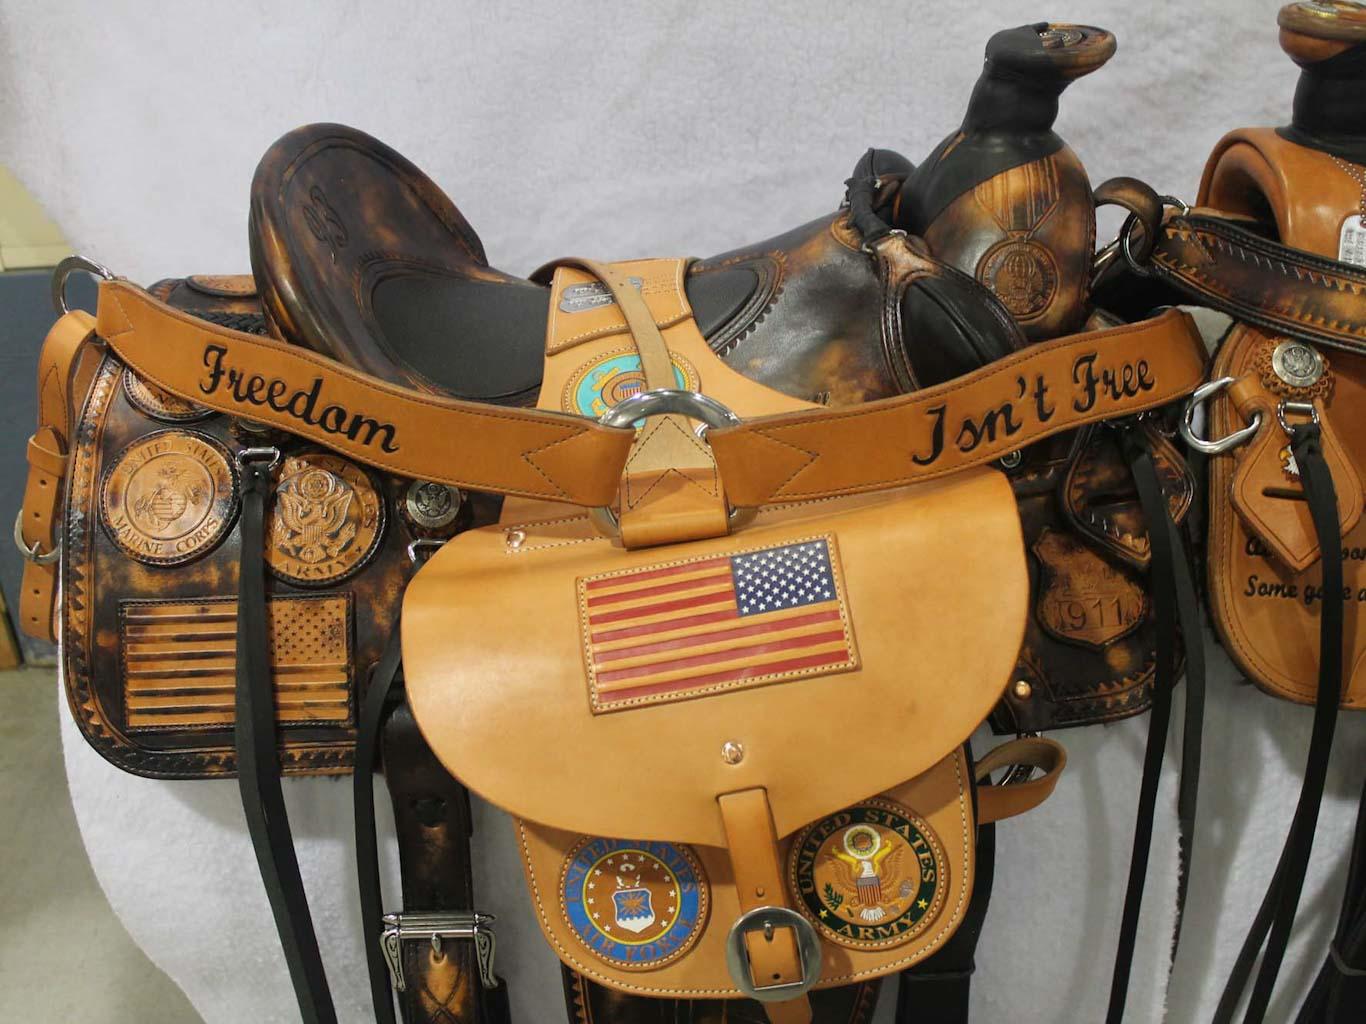 9-11 saddle